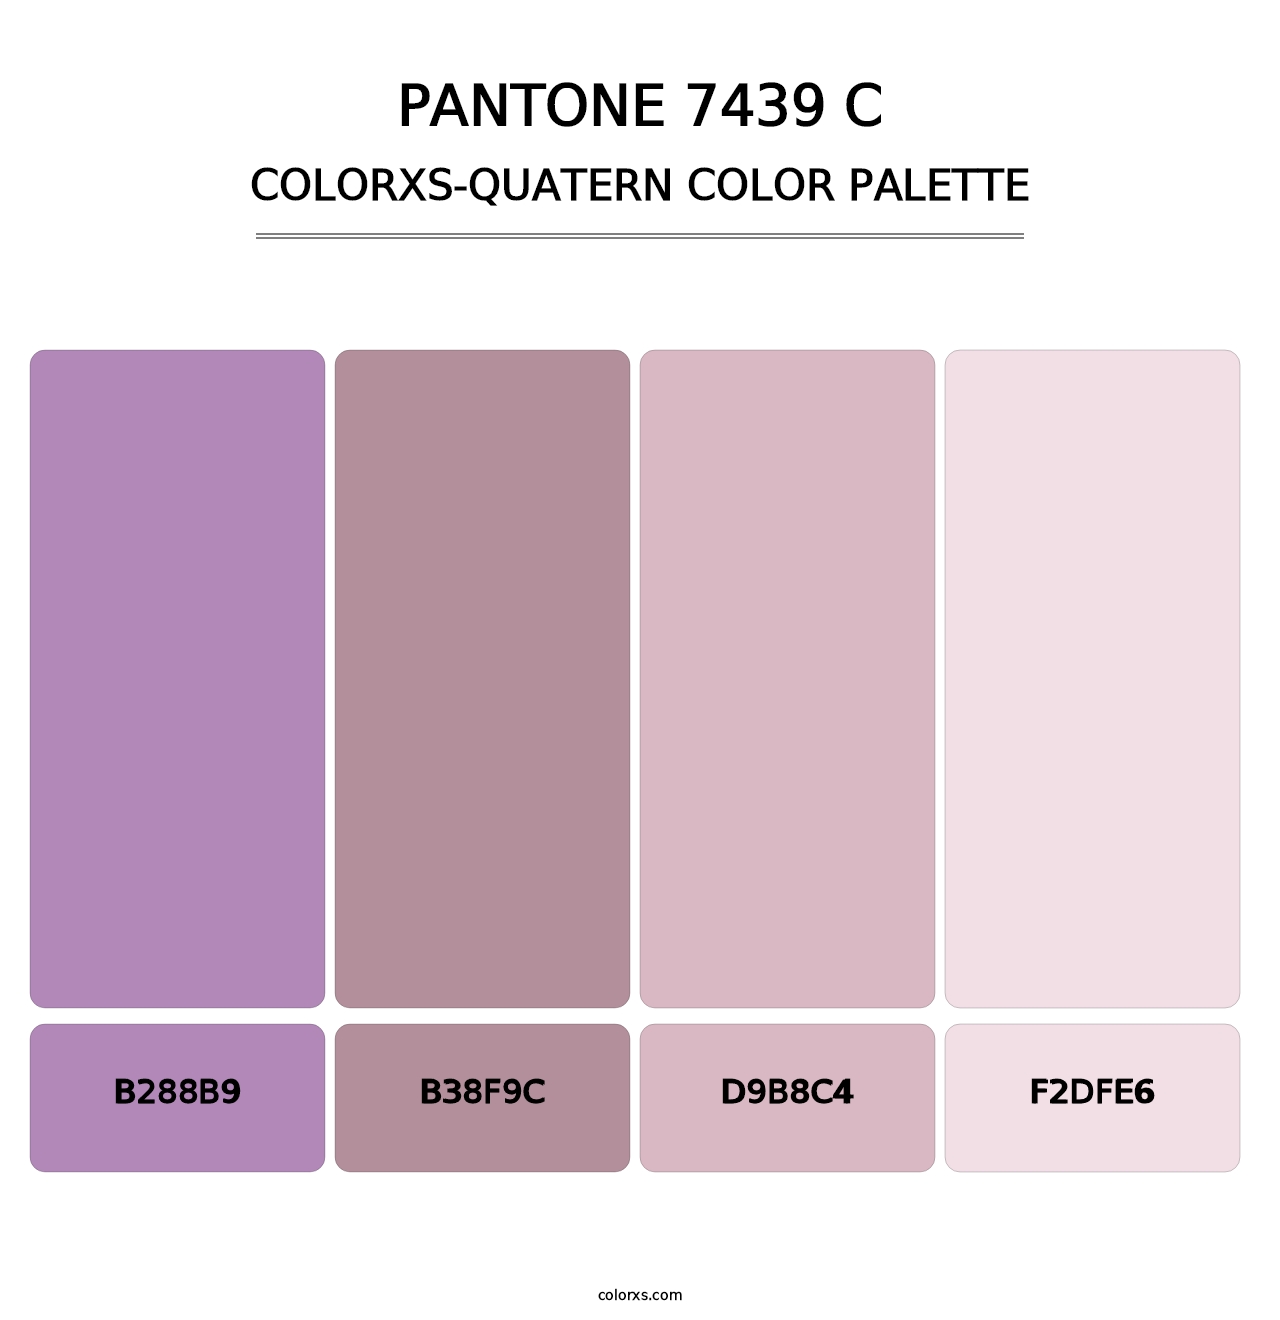 PANTONE 7439 C - Colorxs Quatern Palette